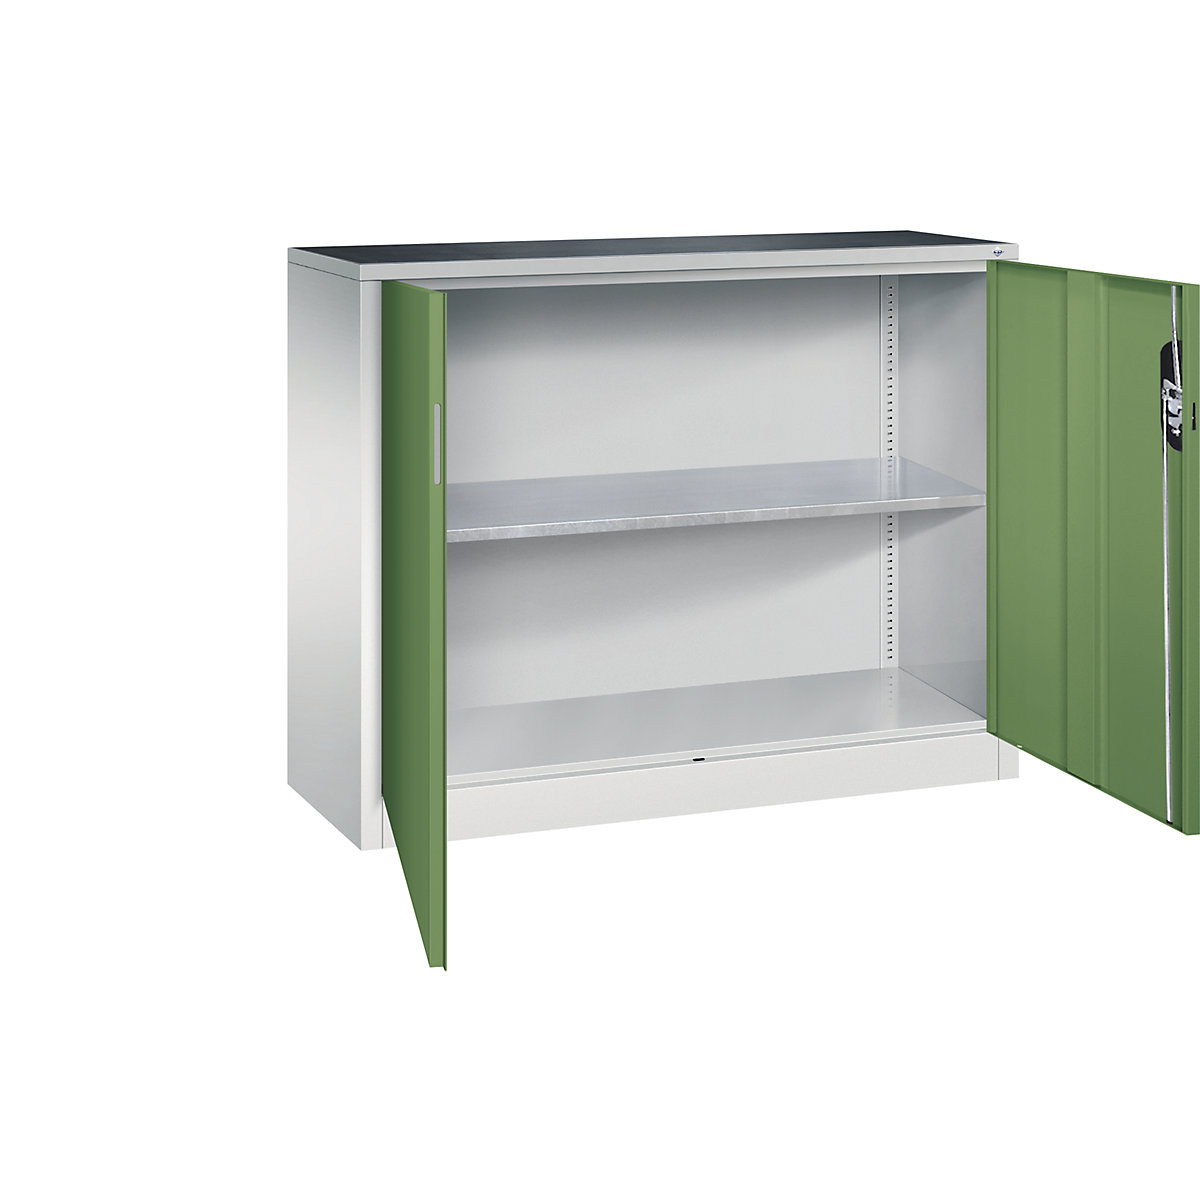 Workshop side cupboard with hinged doors – C+P